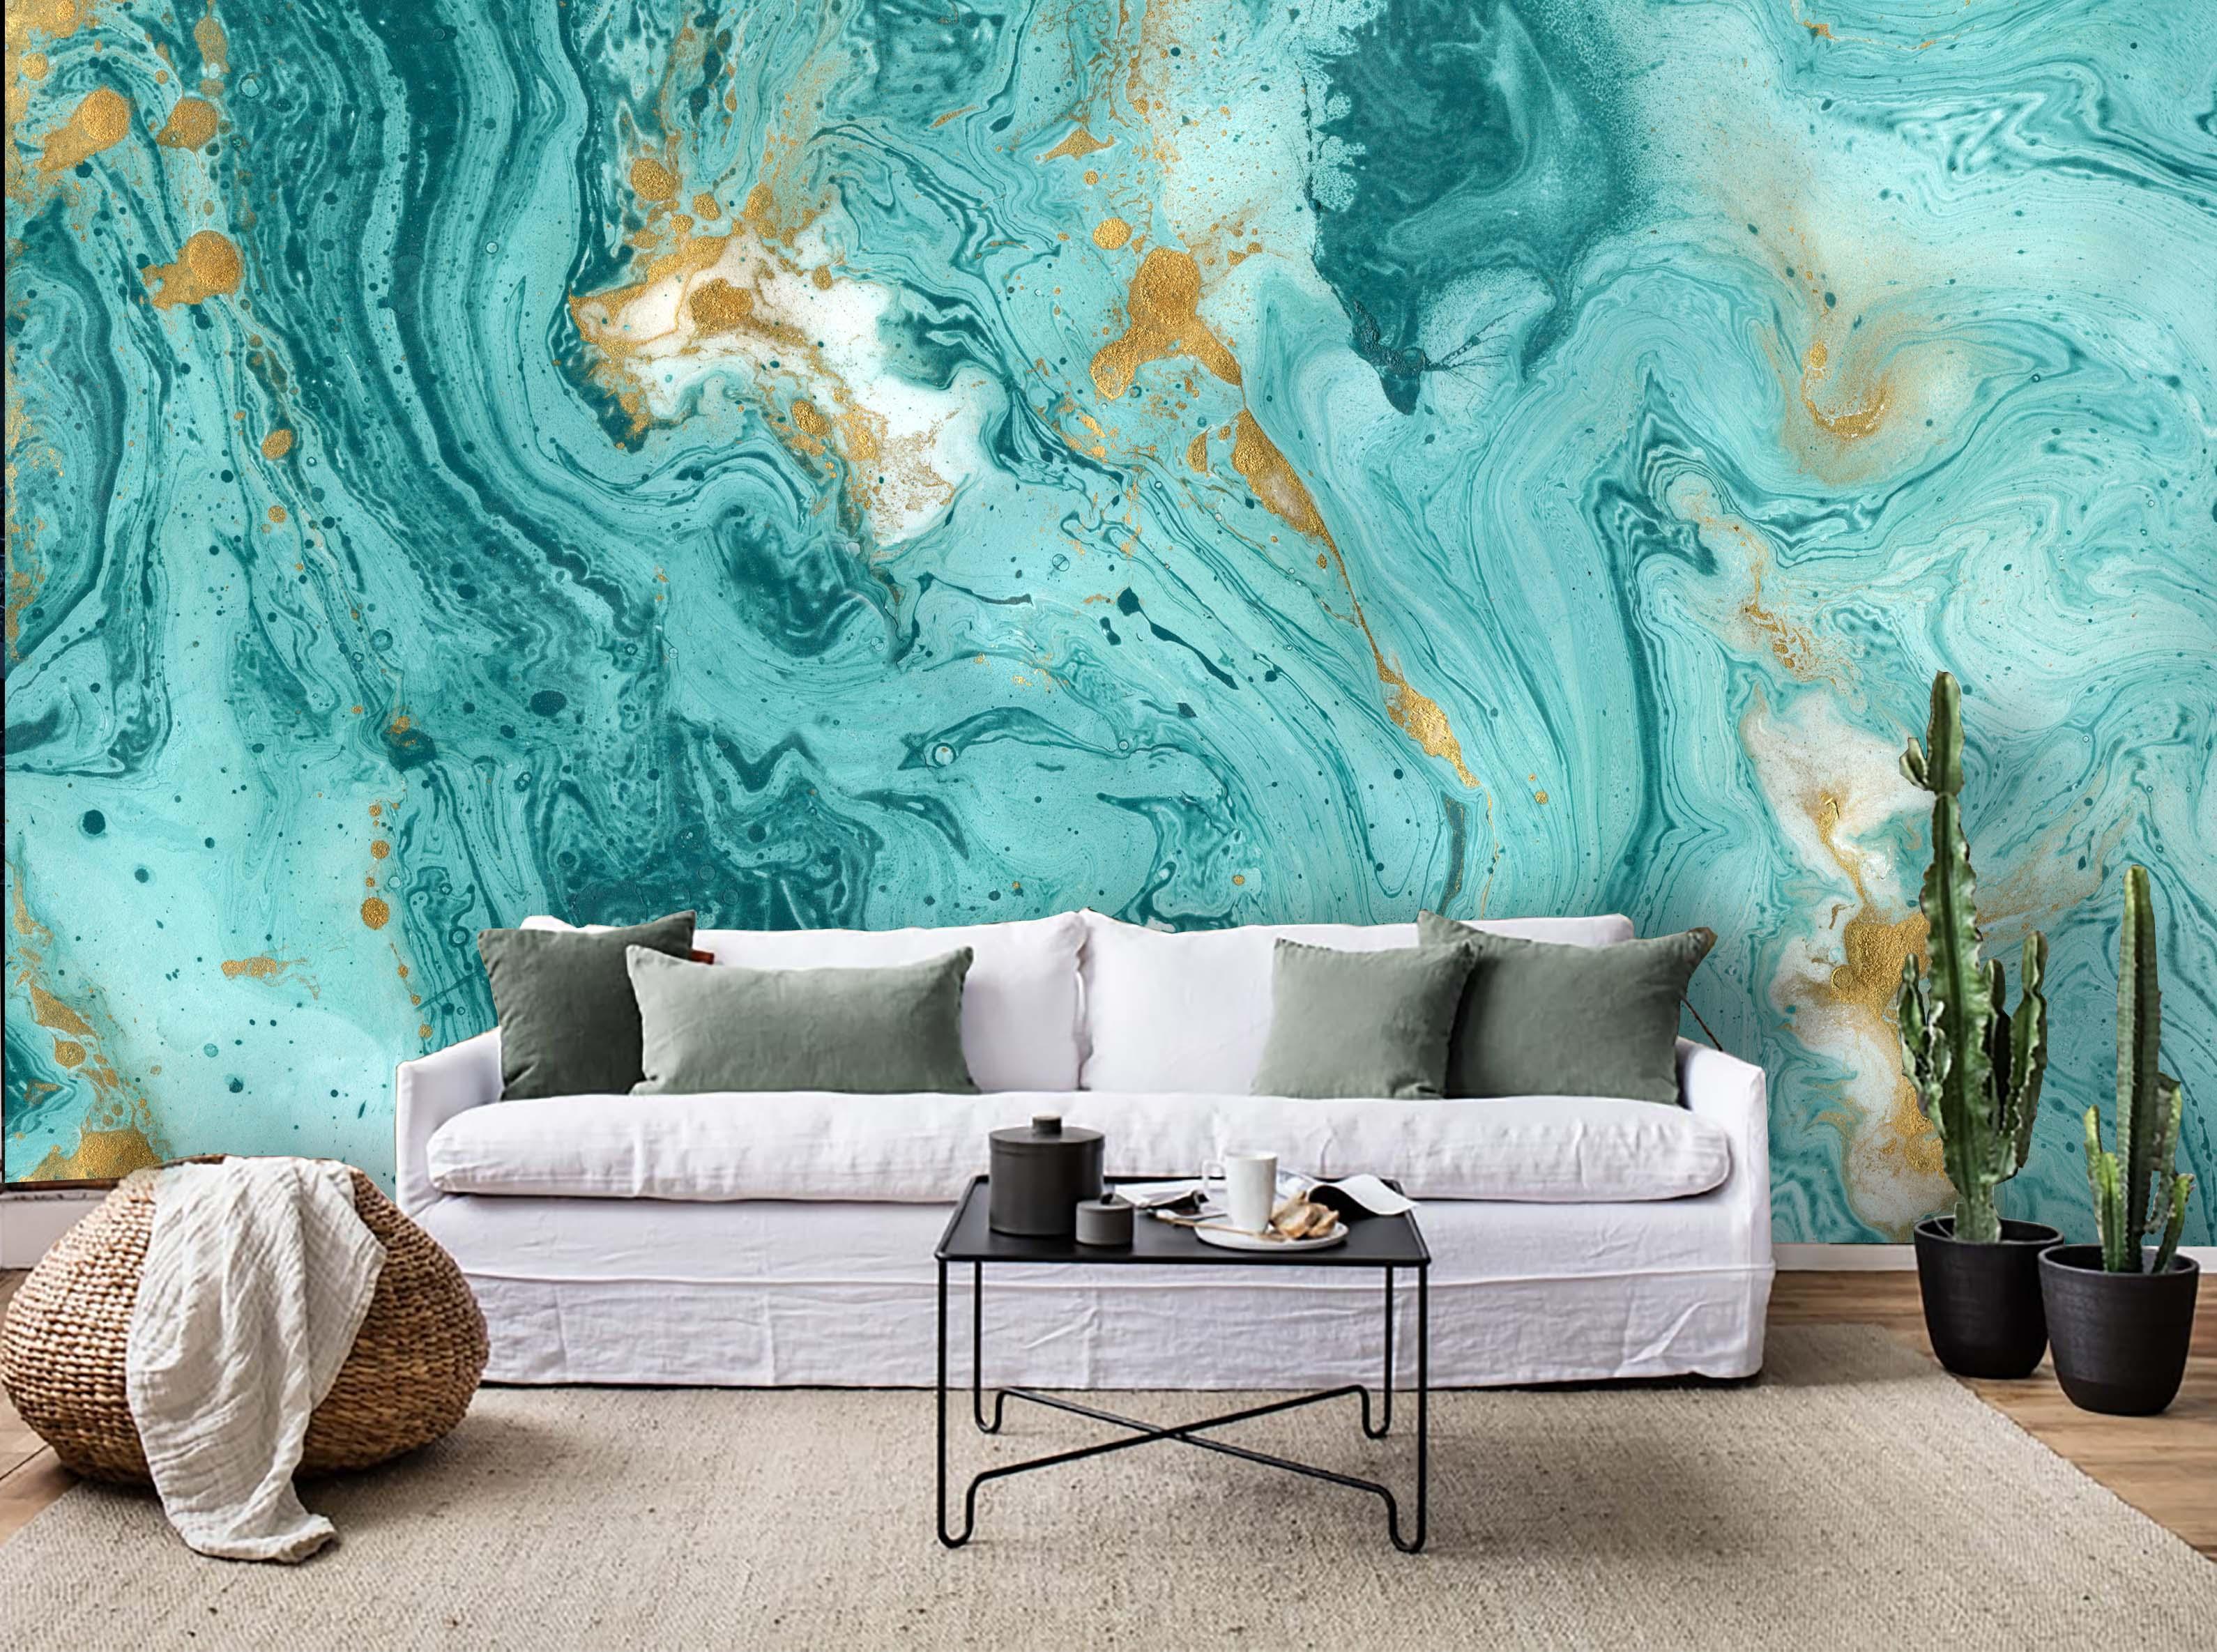 3D Abstract Sea Art Wall Mural Wallpaper 43- Jess Art Decoration